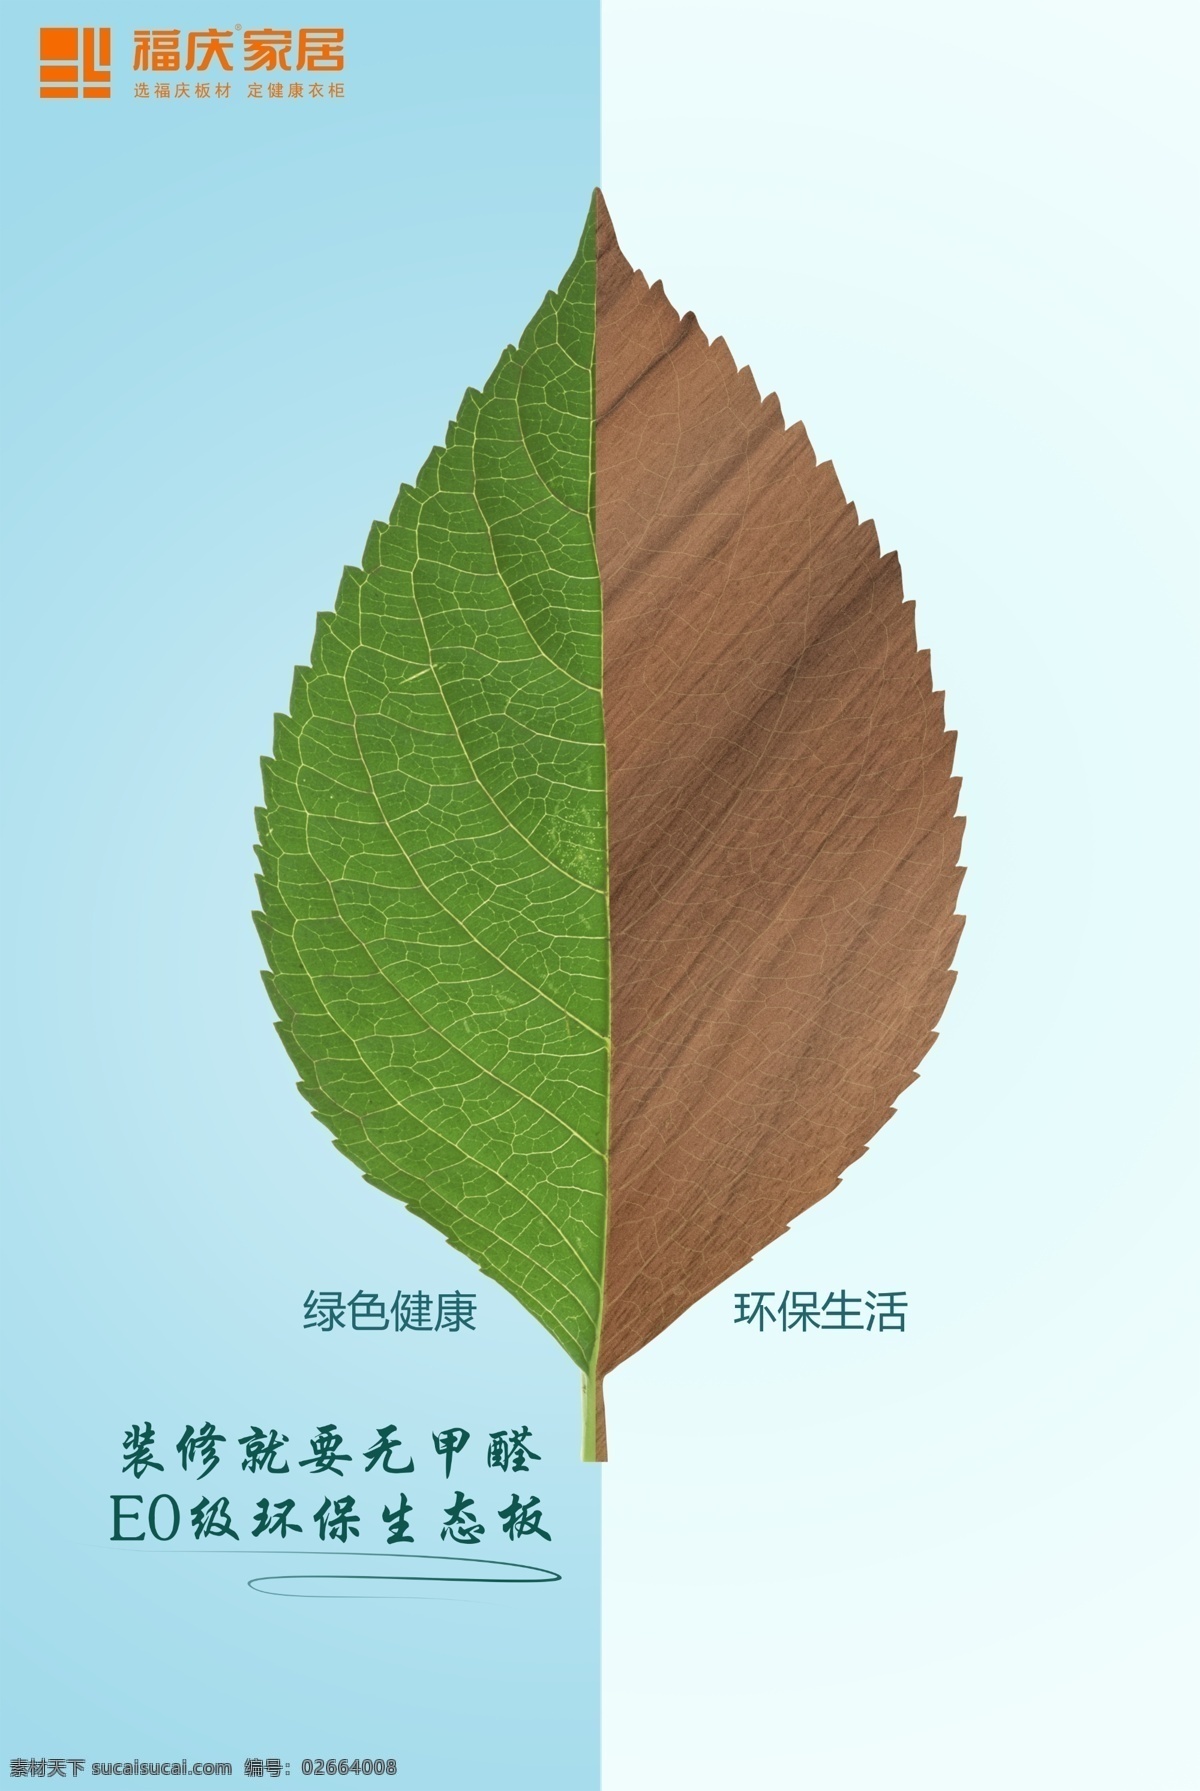 福庆家居 logo 海报 绿色健康 环保生活 生态板 写真 分层